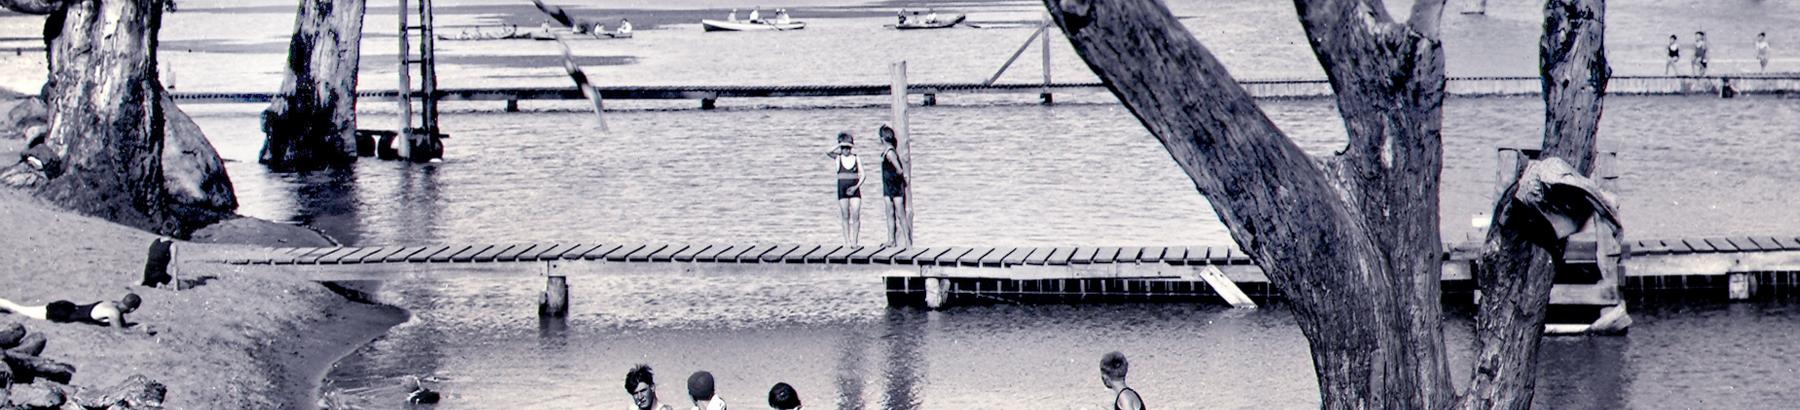 Historical image of Lake Talbot Pool